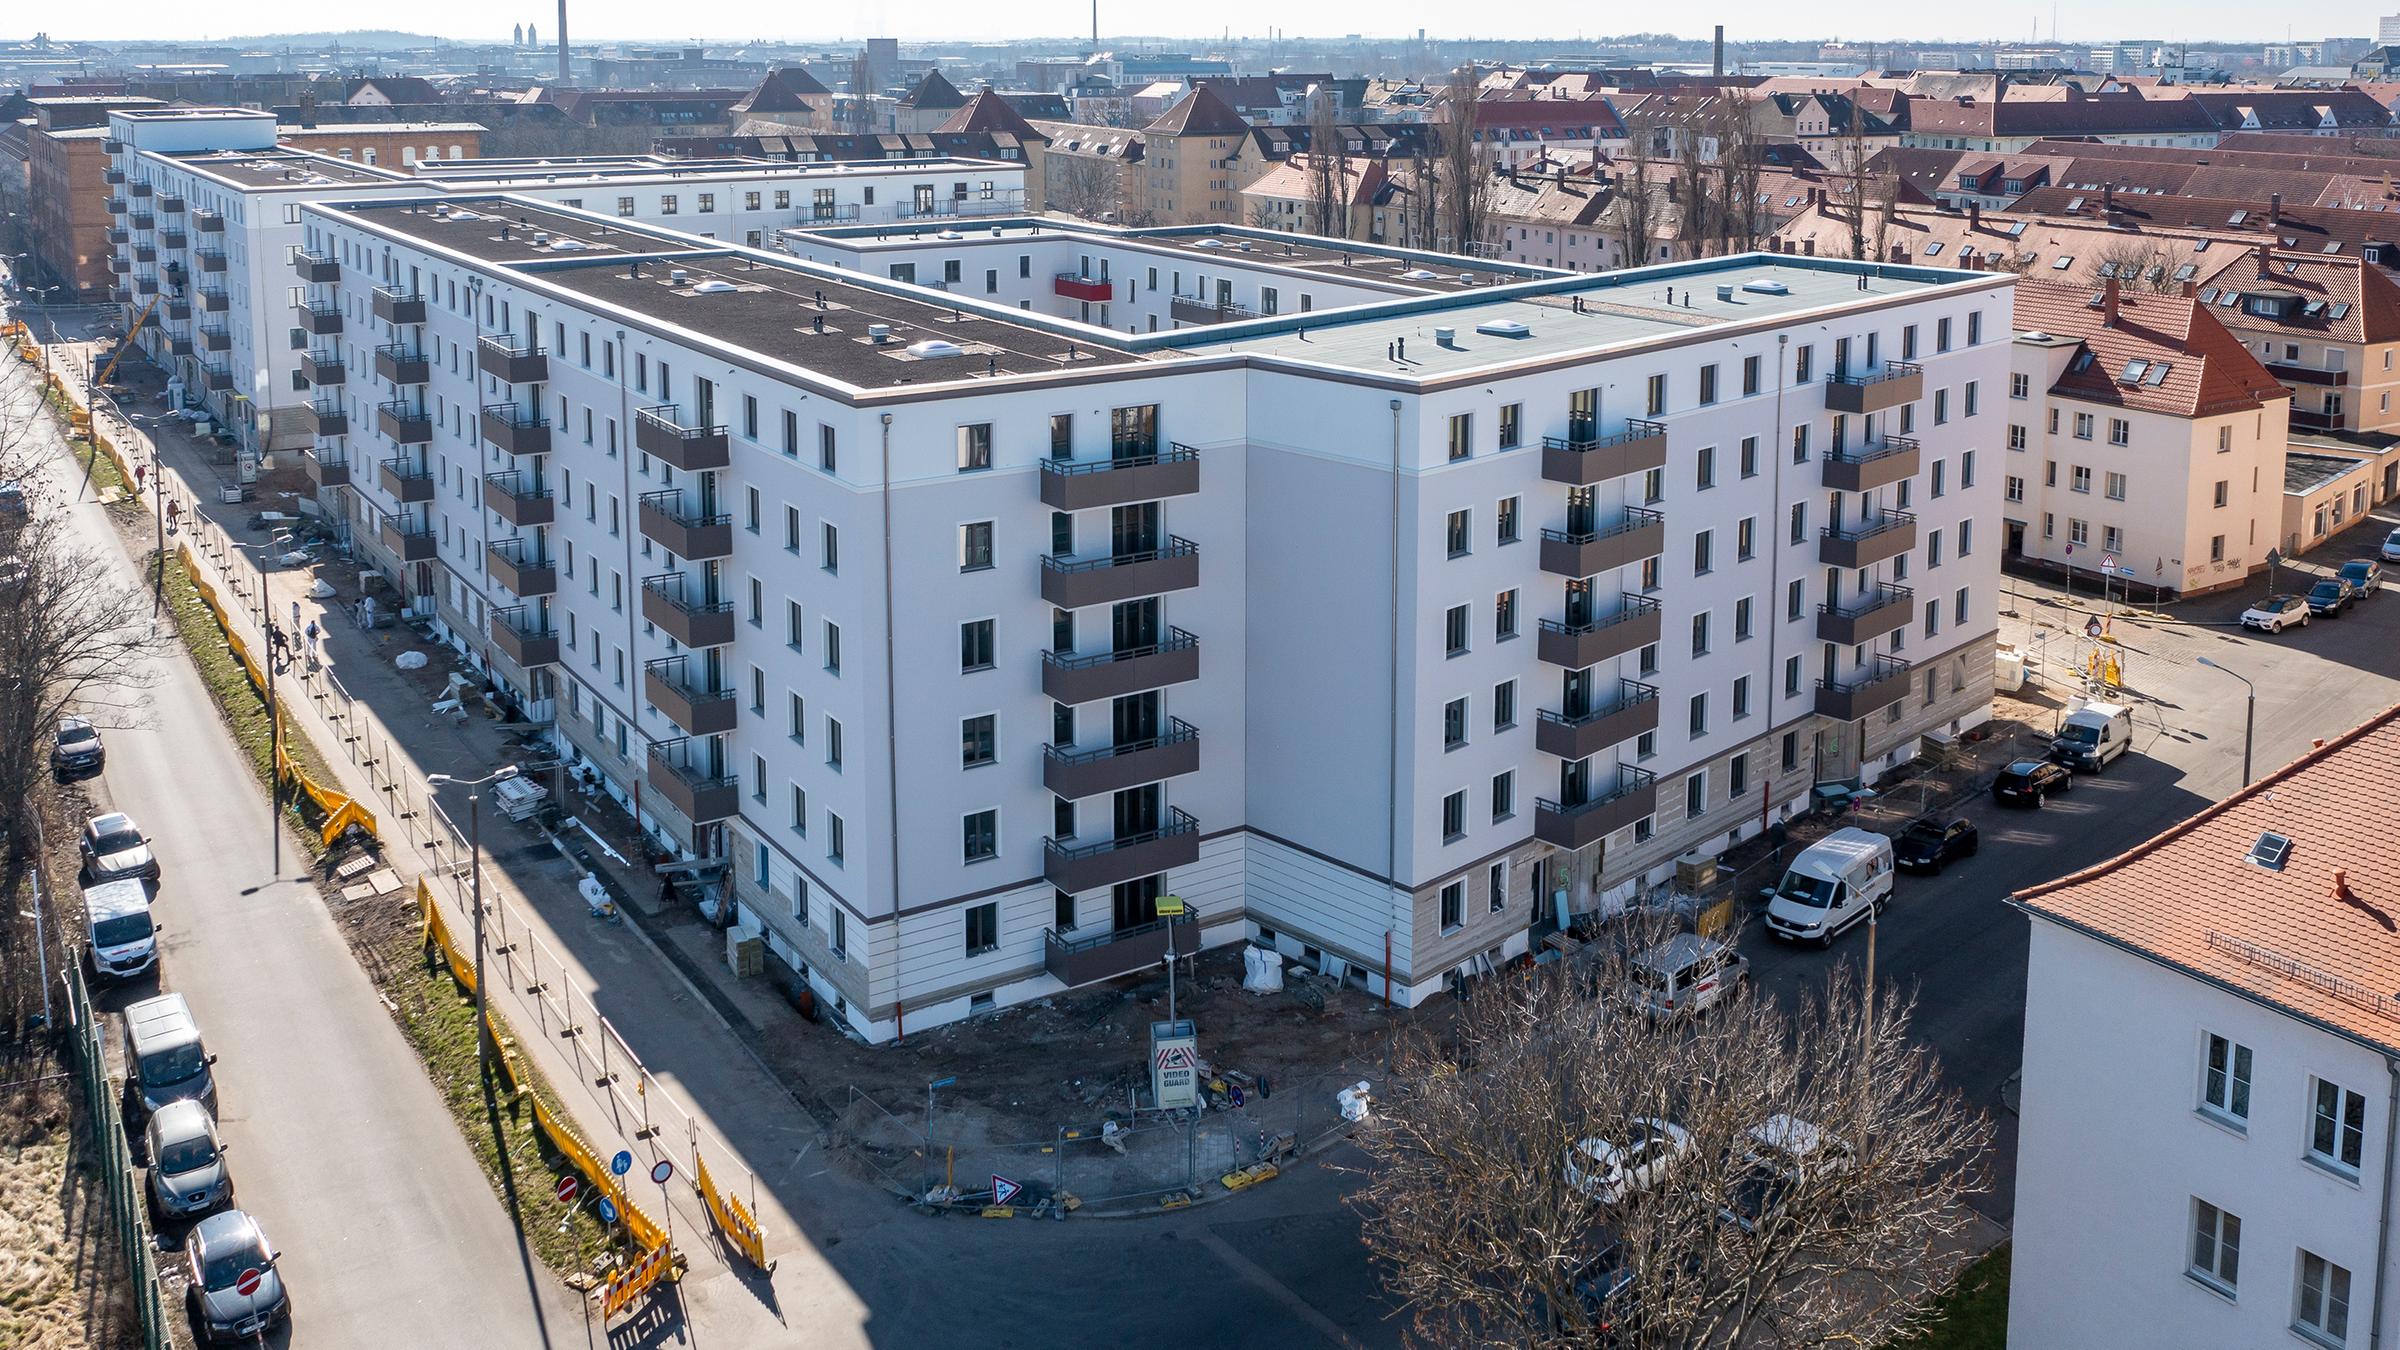 Wohnungsnot in deutschen Städten: Parkhäuser werden zu Wohnraum